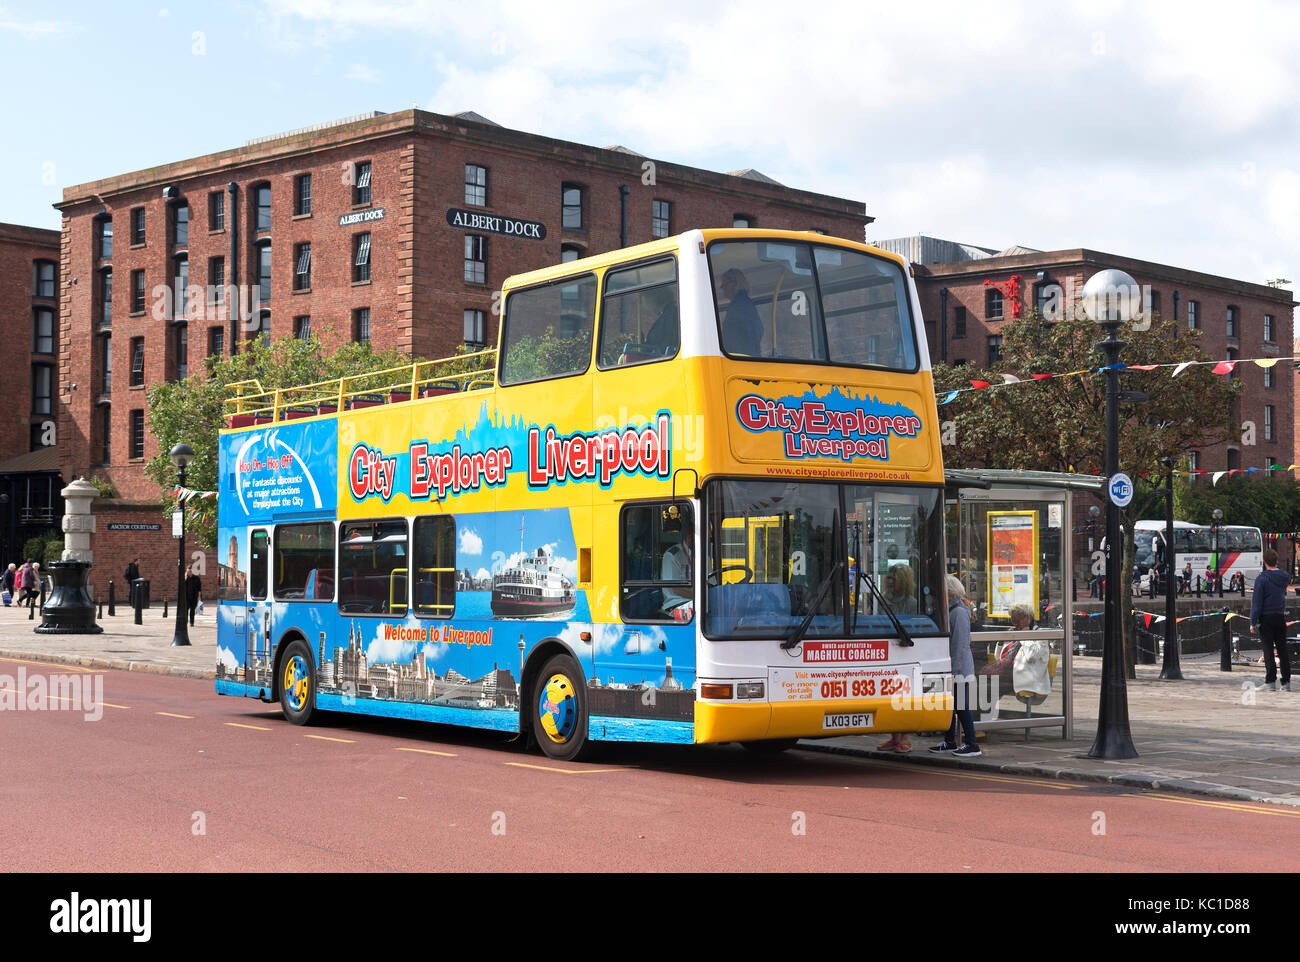 Ein Tourist sightseeing tour bus am Albert Dock in Liverpool, England, Großbritannien, Großbritannien. Stockfoto